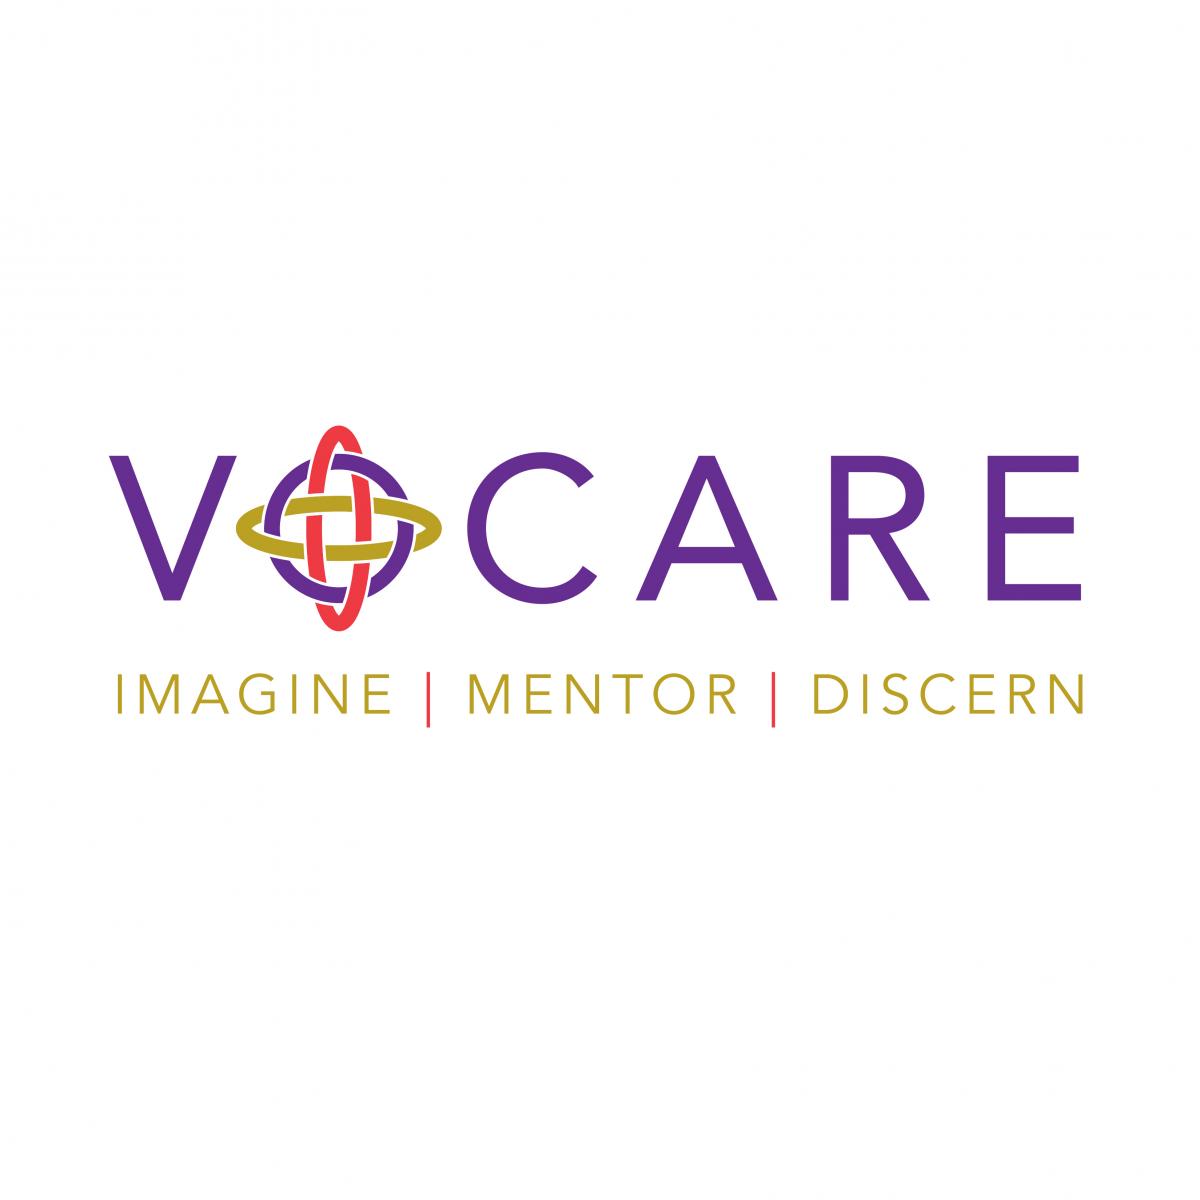 Vocare: Imagine | Mentor | Discern Logo Example